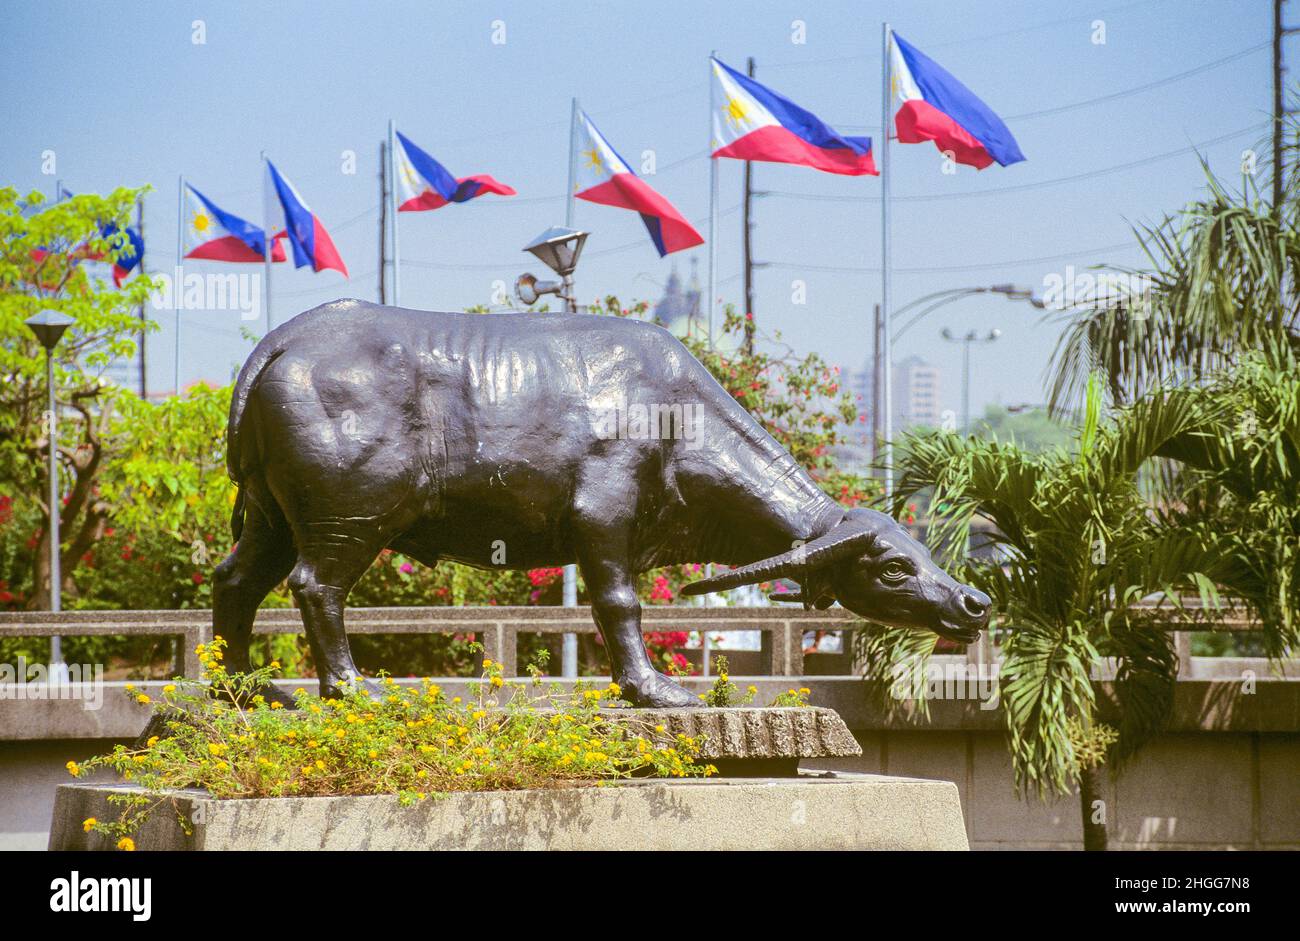 Una statua a grandezza naturale di carabao (bufalo d'acqua) sul Burnham Green nella sezione sud-ovest del Parco Rizal a Manila, Luzon, nelle Filippine. Una serie di bandiere nazionali delle Filippine può essere vista sullo sfondo. Rizal Park (conosciuto anche come Luneta Park, o semplicemente Luneta) è un parco urbano storico nel quartiere Ermita di Manila. E' uno dei parchi urbani piu' grandi in Asia, che copre un'area di 58 ettari, adiacente alla storica citta' murata di Intramuros. Situato sulla riva orientale della Baia di Manila, il parco gioca un ruolo significativo nella storia delle Filippine. Foto Stock